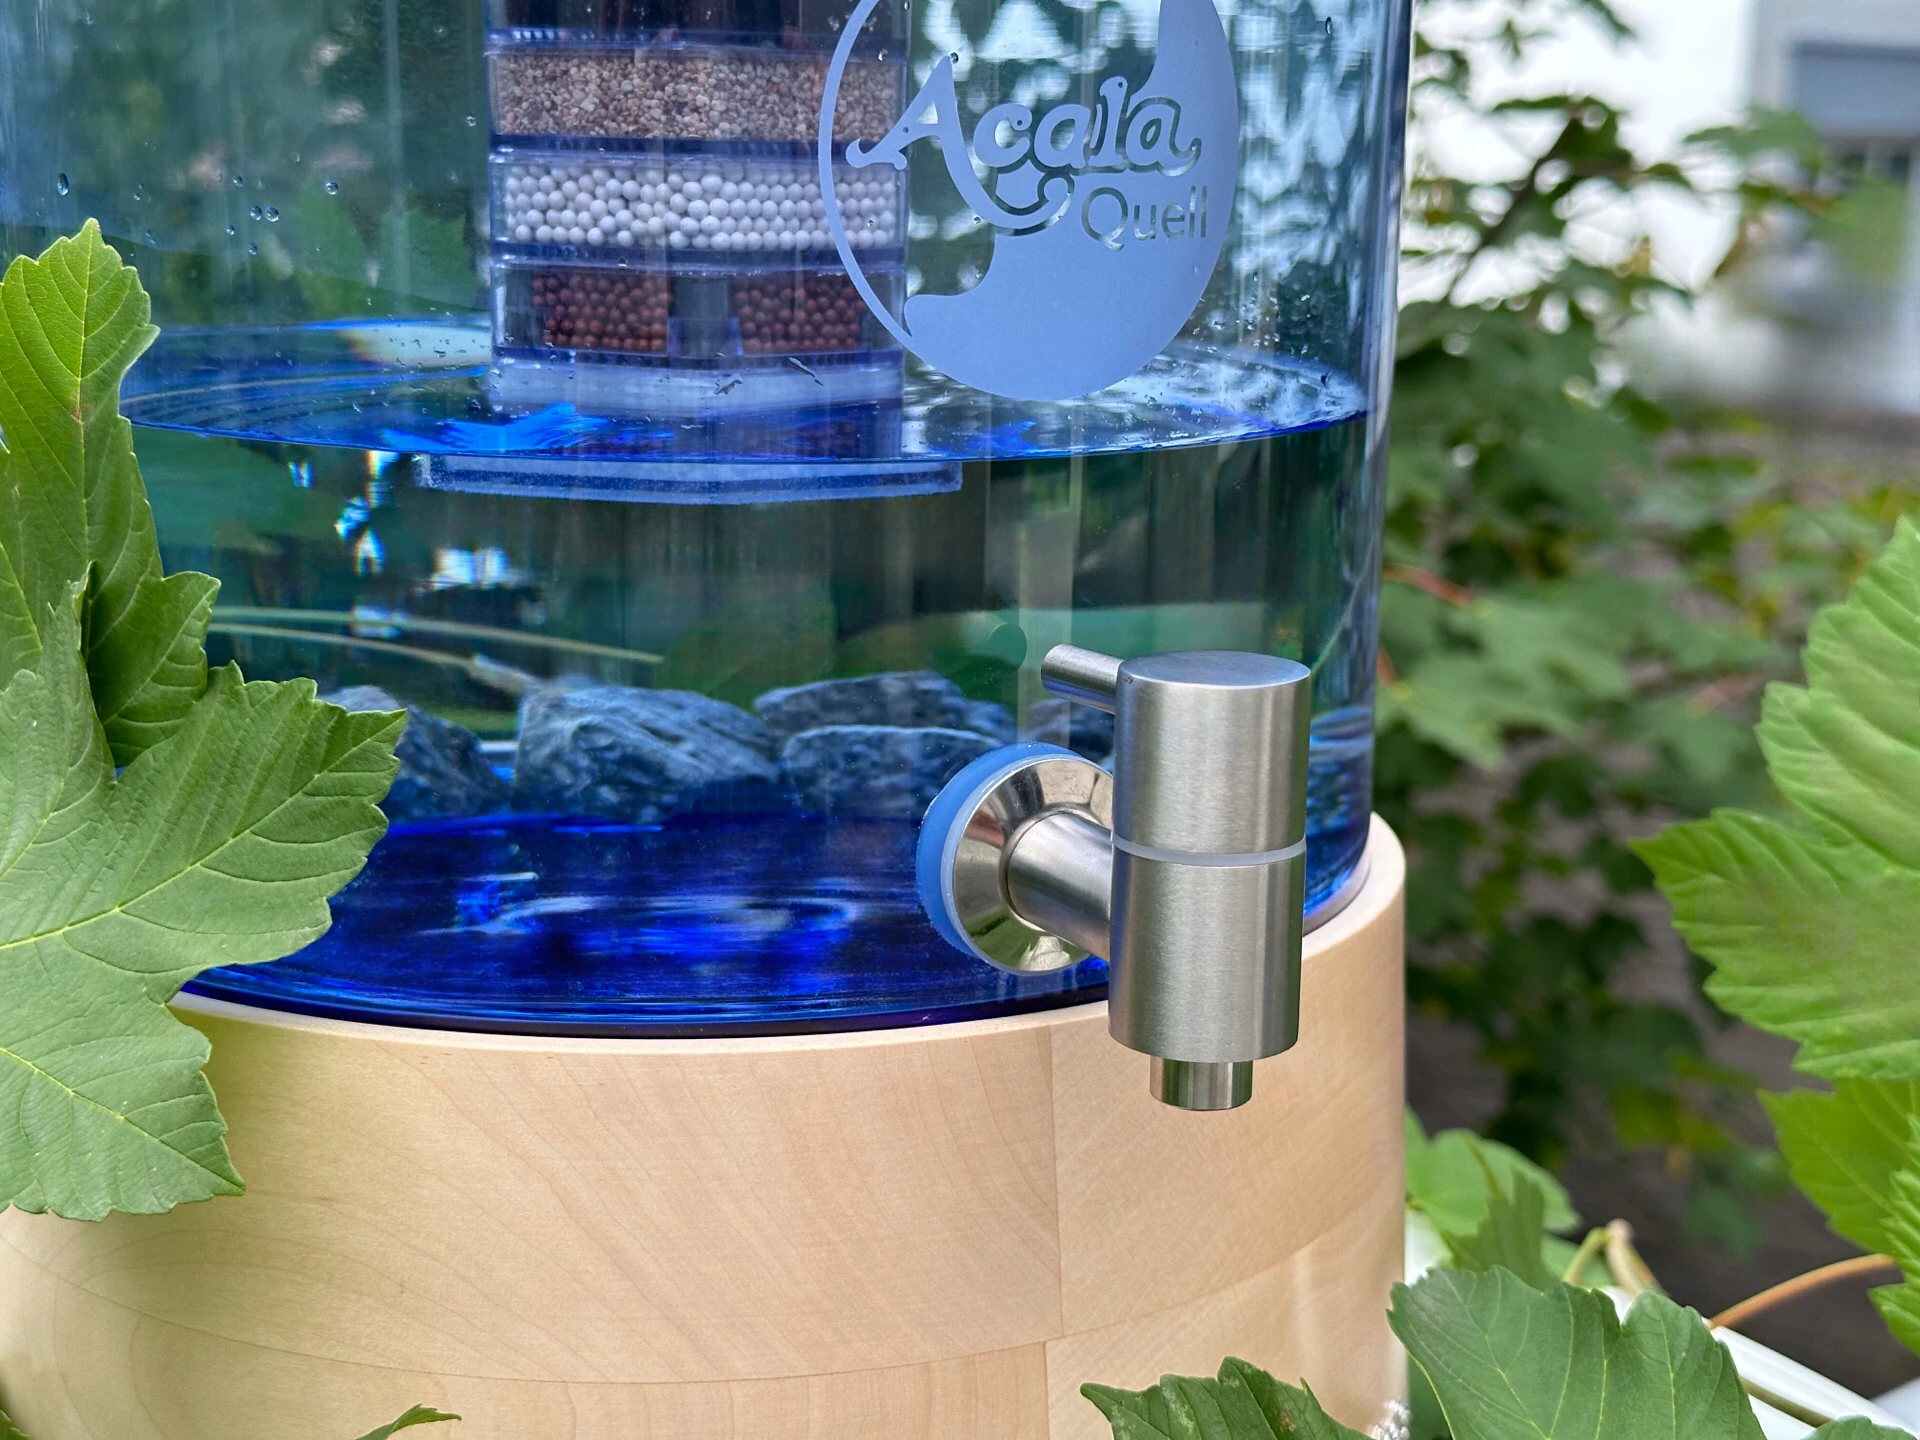 Zu sehen ist ein Standwasserfilter mit Glastank in blau und Ahorn Echtholz Sockel und Deckel. Der Filter steht auf einem weißen Tisch, im Hintergrund sieht man einen grünen Baum, um den Filter herum liegen grüne Blätter.